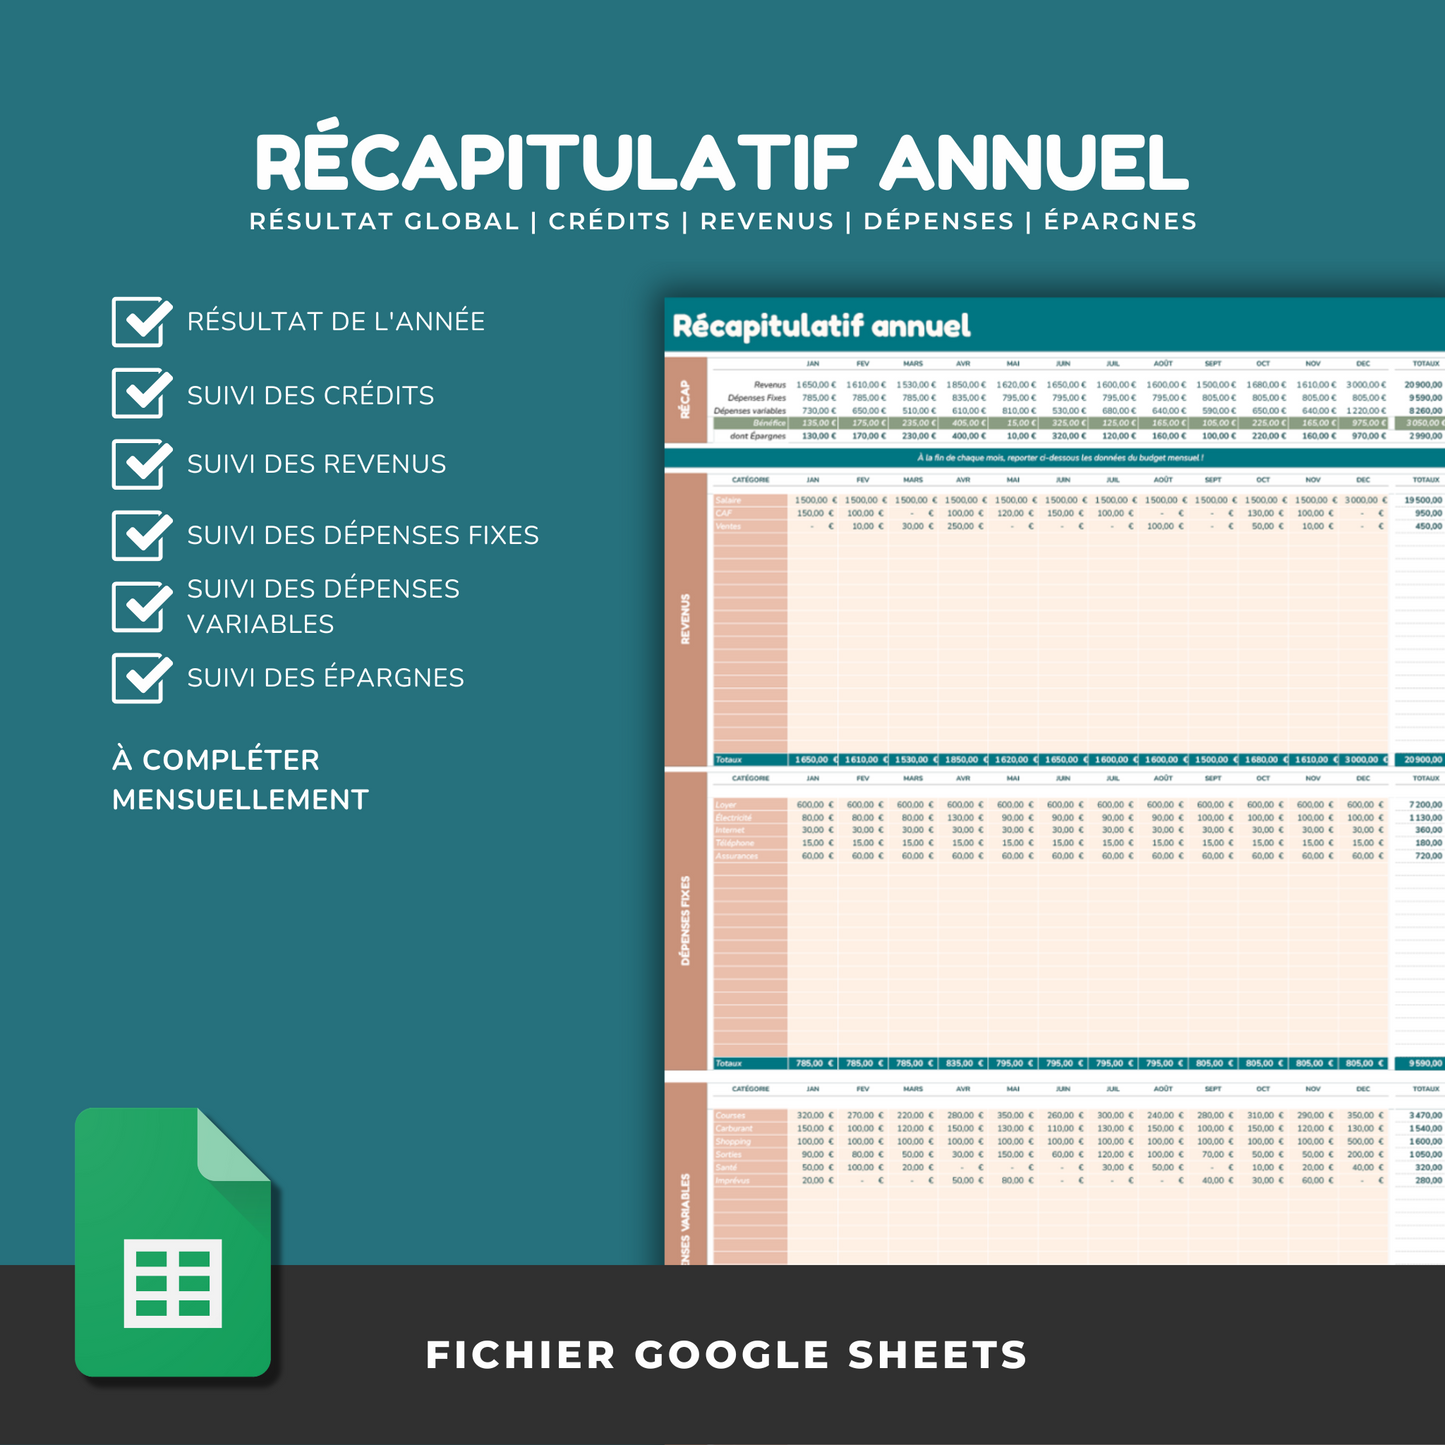 Budget Planner Ultime (Google Sheet)